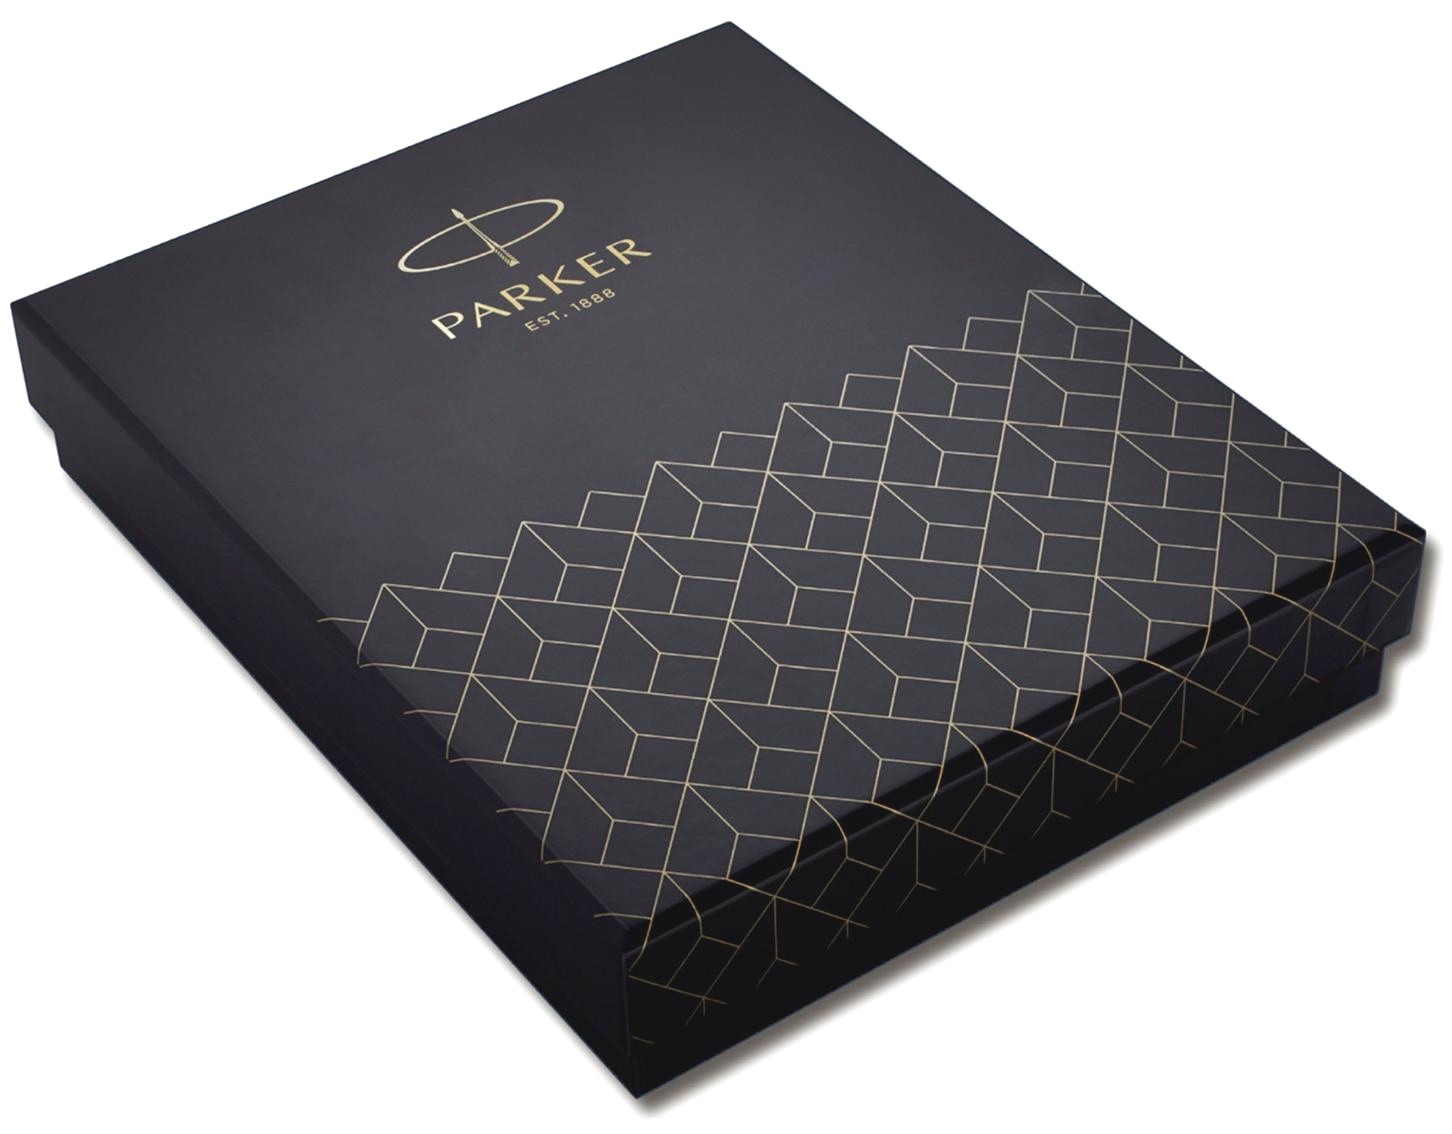  Подарочная коробка с чехлом для карт Parker 2020 из искусственной кожи и местом для ручки, фото 2